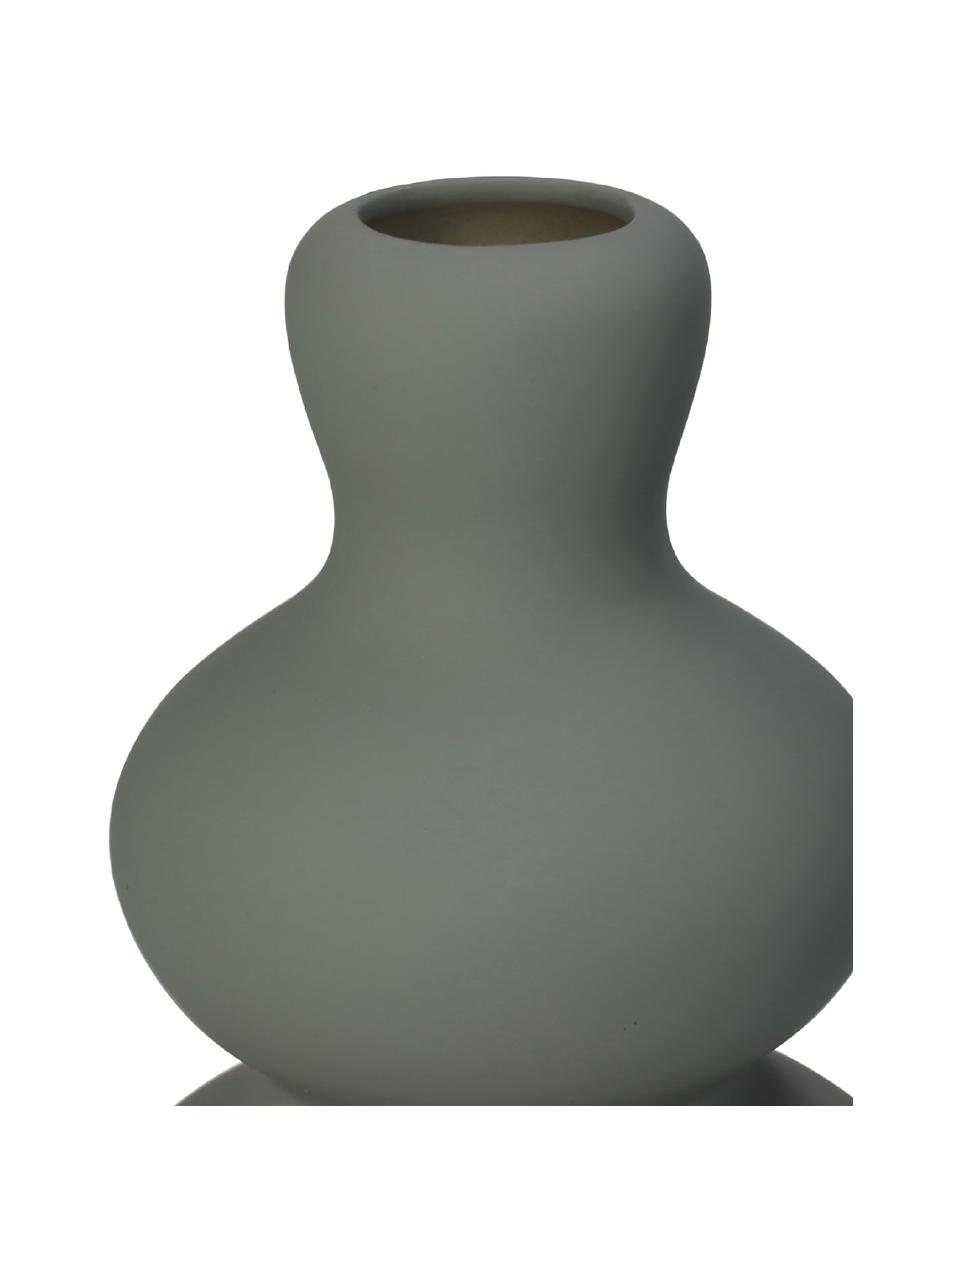 Vaso moderno in gres color verde-grigio Fine, Gres, Verde-grigio, Ø 14 x Alt. 20 cm